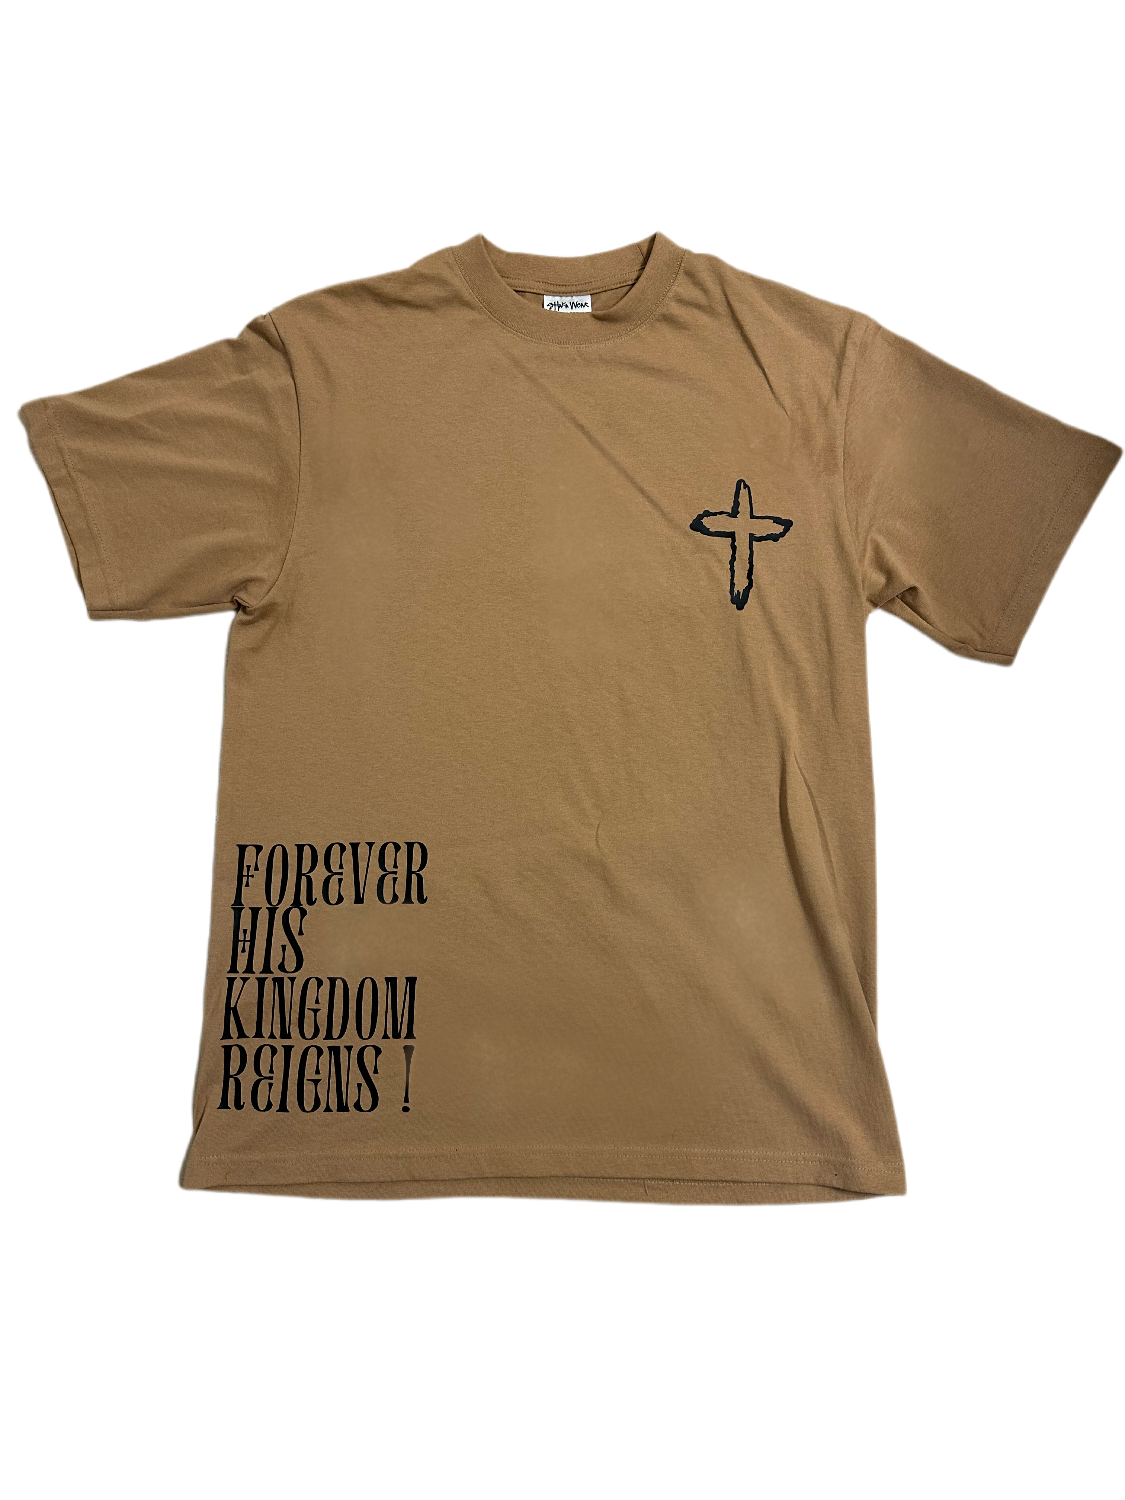 Our God Reigns™ Cream Shirt